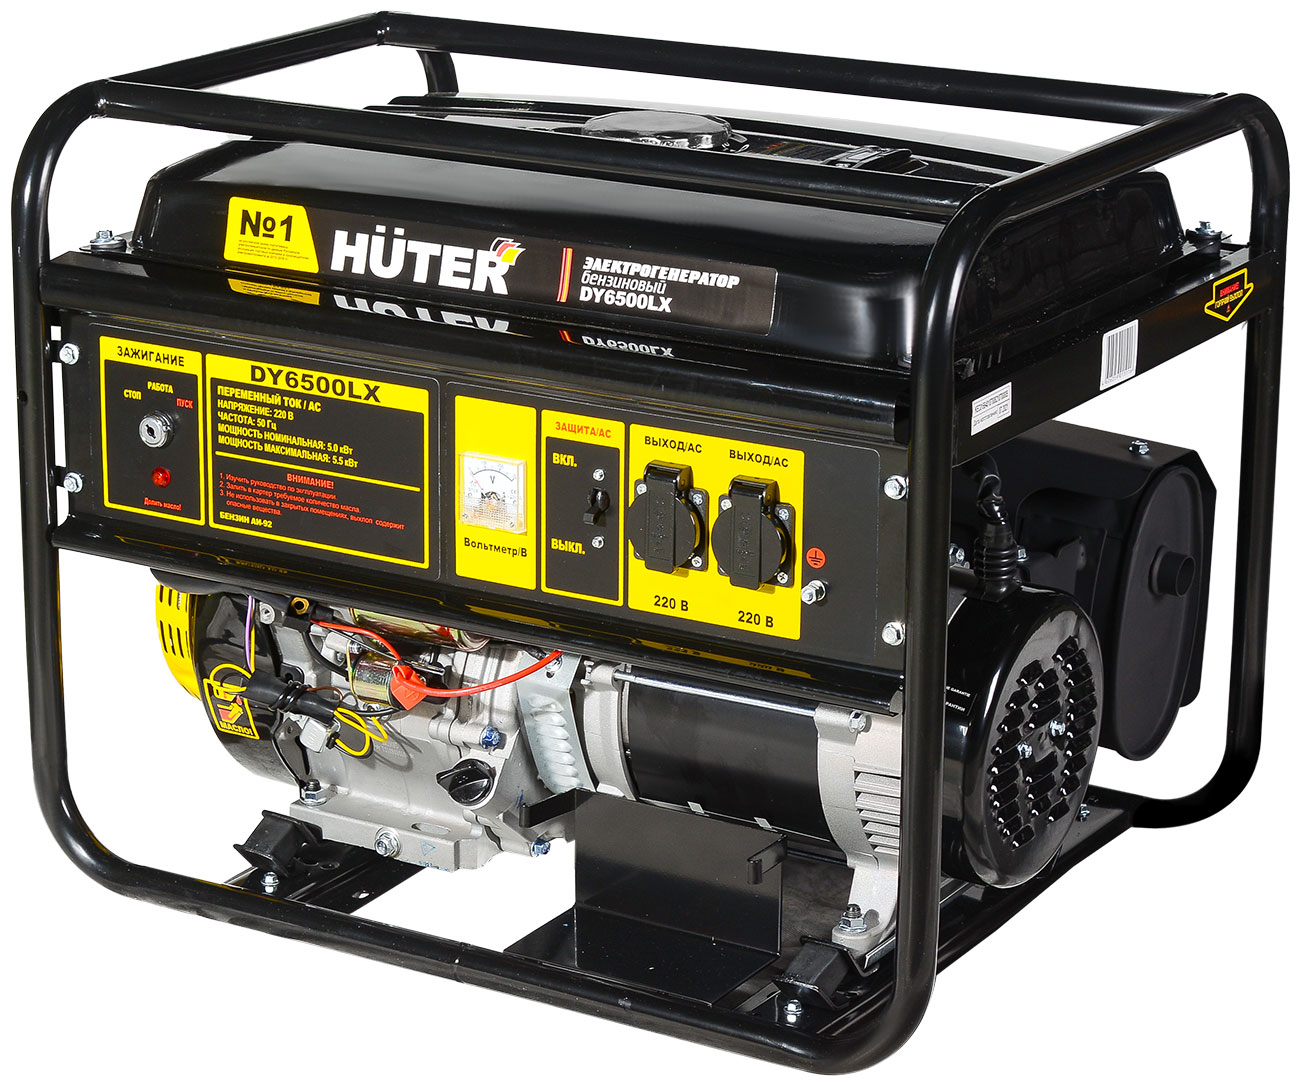 электрический генератор и электростанция huter ht 950 a Электрический генератор и электростанция Huter DY6500LX- электростартер